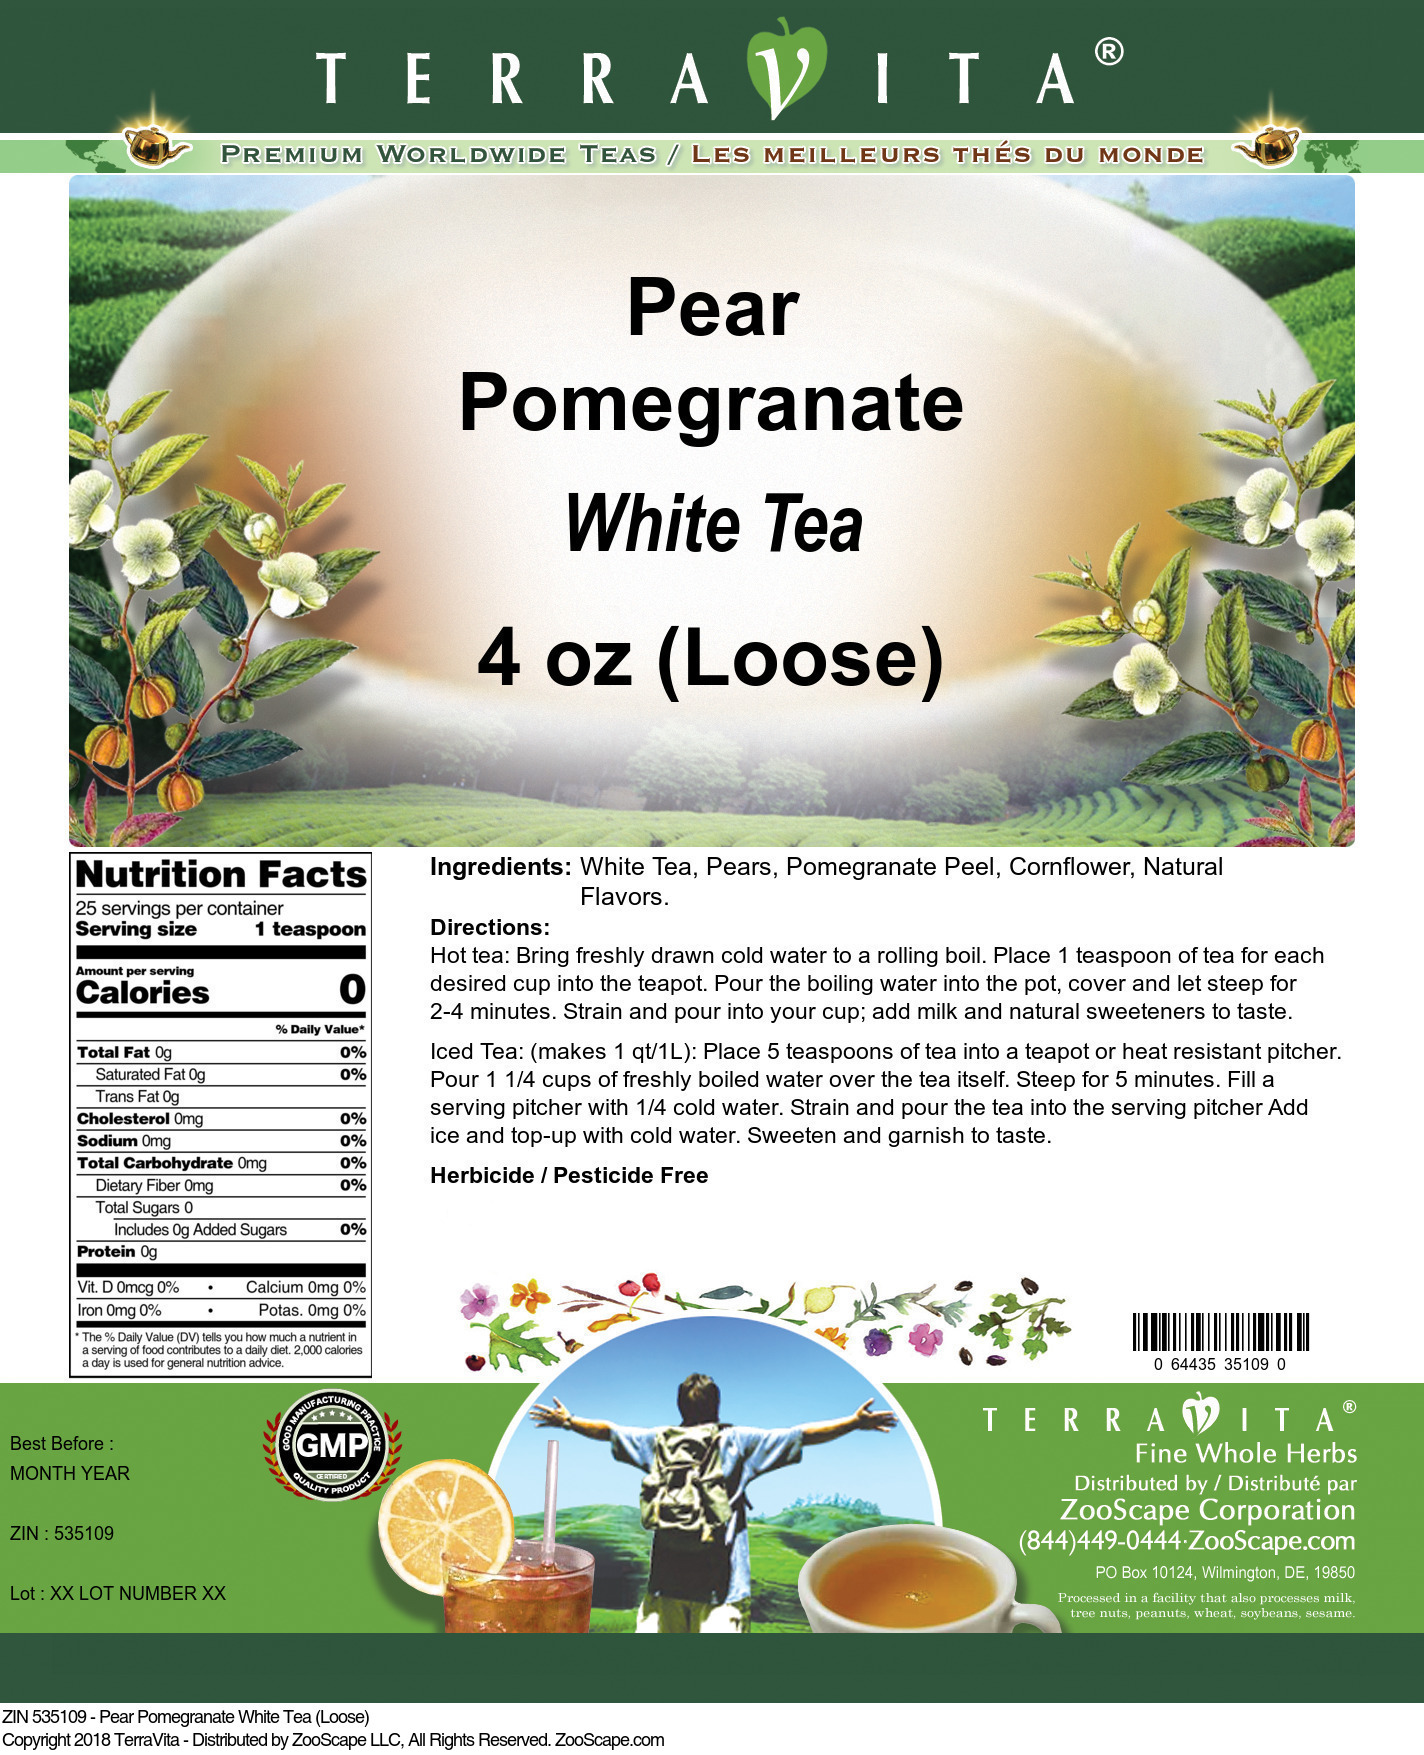 Pear Pomegranate White Tea (Loose) - Label